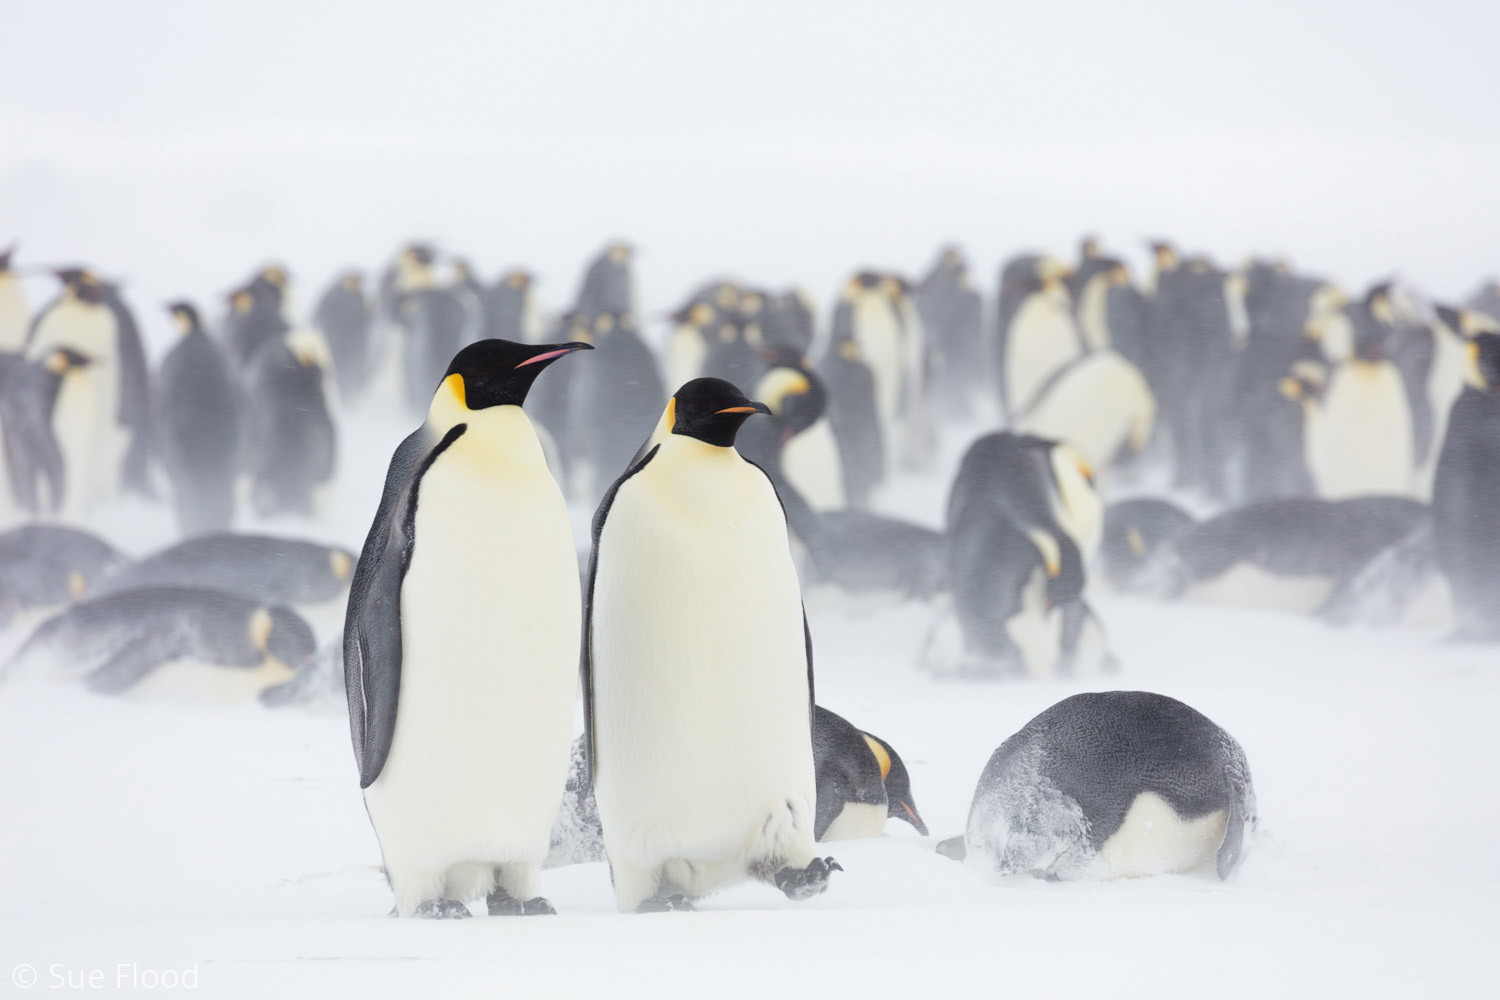 Emperor penguins in snow, Gould Bay, Weddell Sea, Antarctic